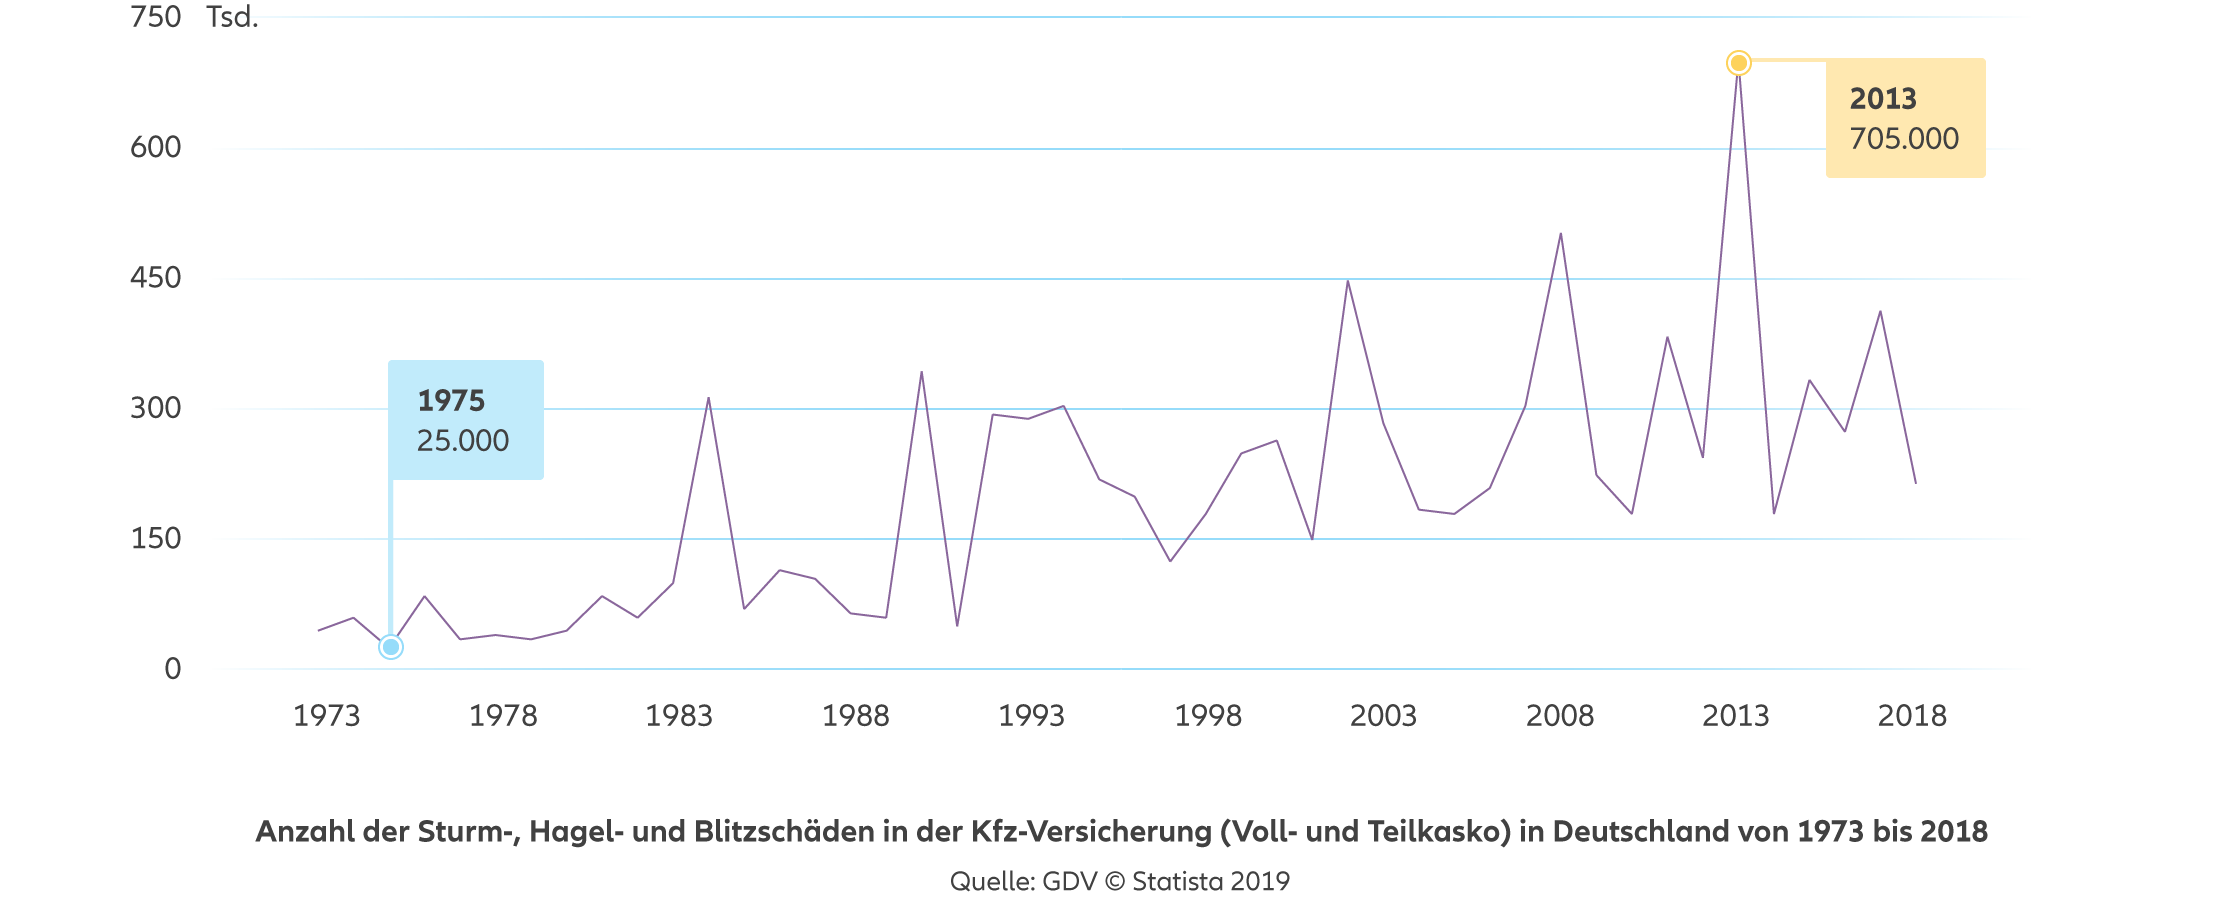 Allianz - Agentursuche Kfz-Versicherung Hamburg - Anzahl der Sturm-, Hagel- und Blitzschäden in der Kfz-Versicherung (Voll- und Teilkasko) in Deutschland von 1973 bis 2018